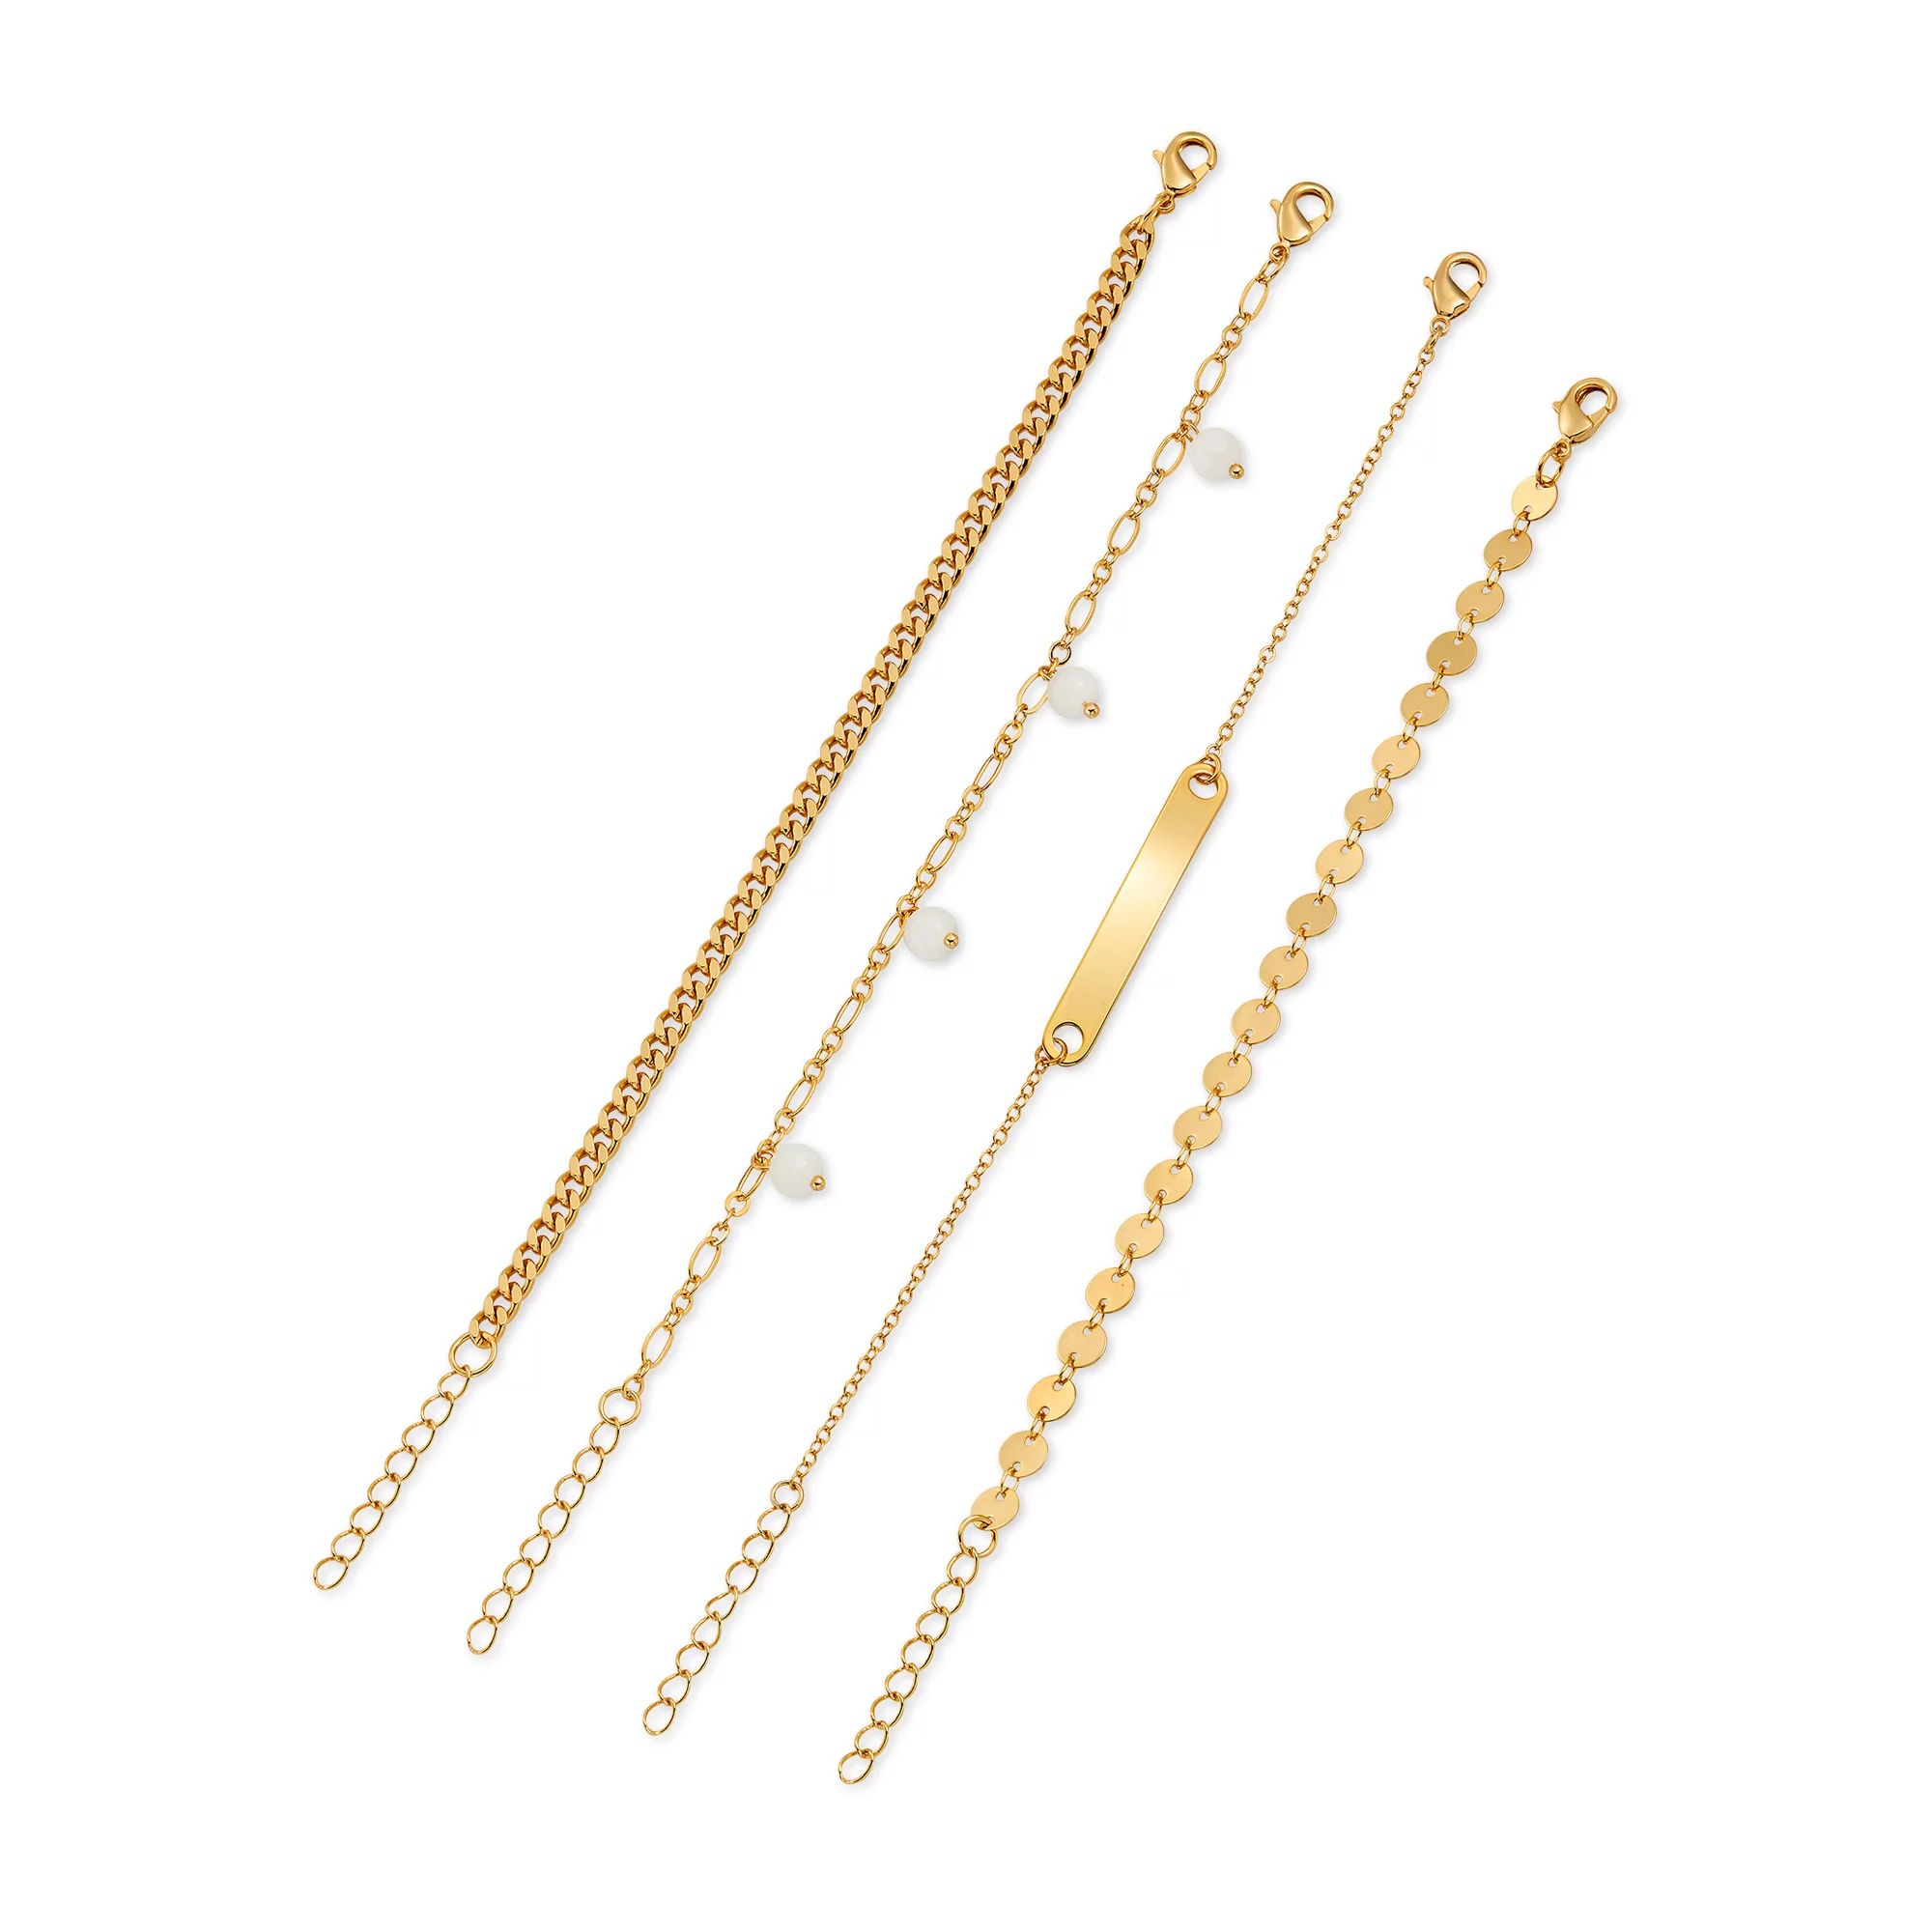 Scoop 14KT Gold Flash Plated Brass Fashion Bracelet Set | Walmart (US)